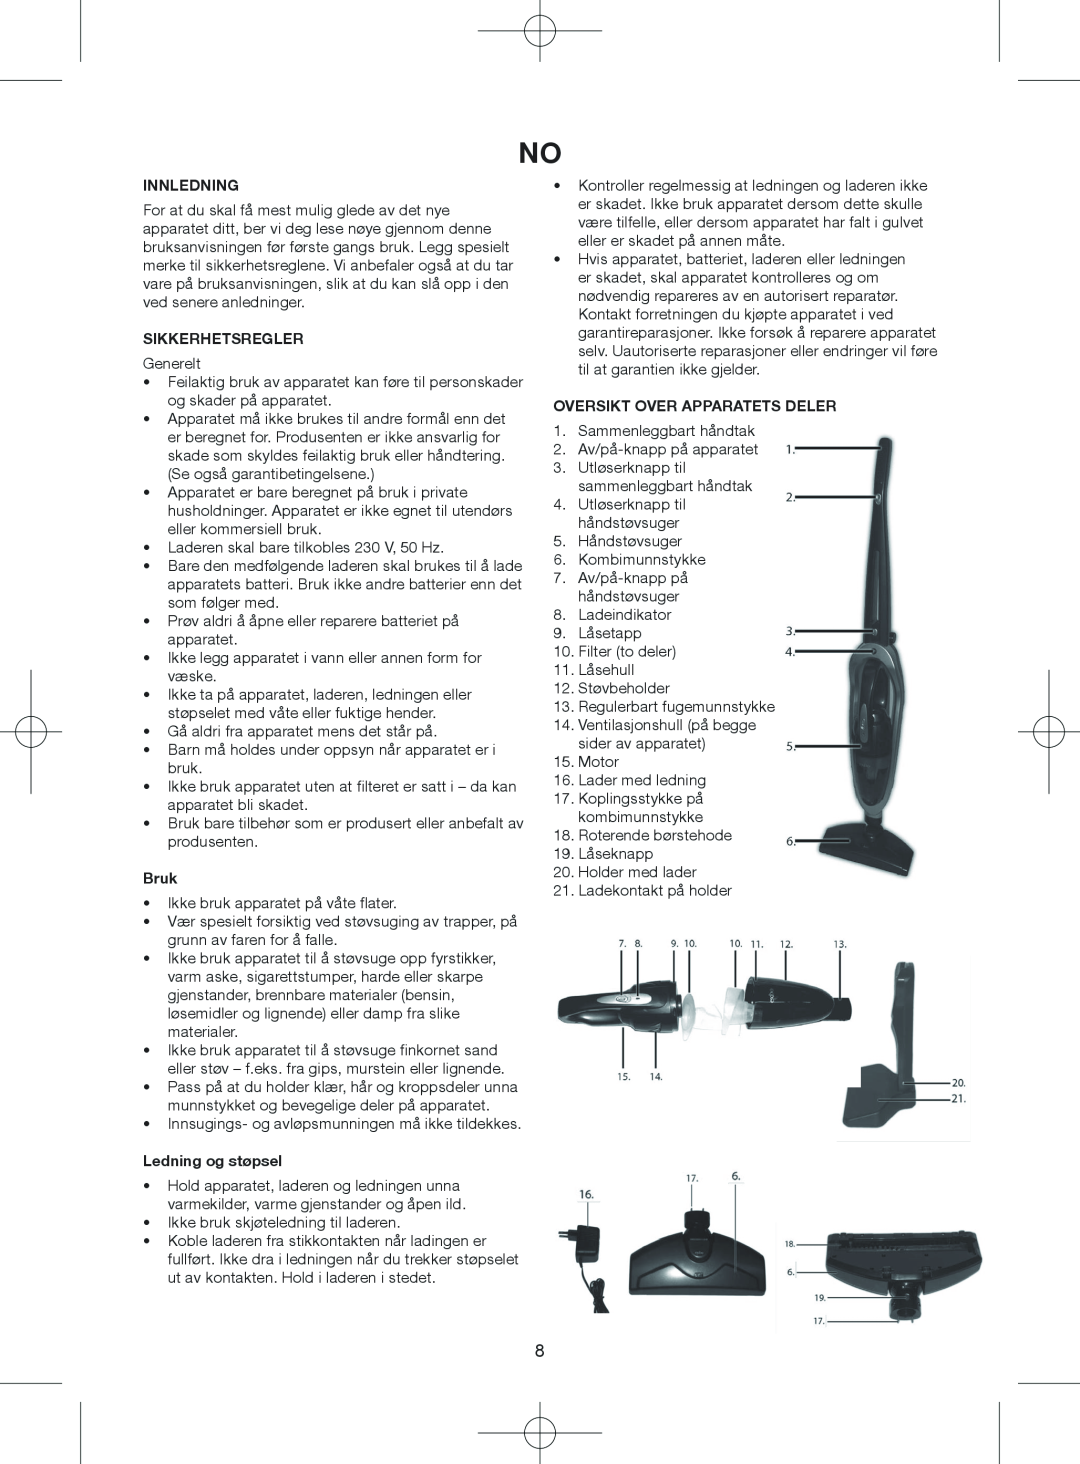 Melissa 640-075 manual Innledning, Sikkerhetsregler, Bruk, Ledning og støpsel, Oversikt Over Apparatets Deler 